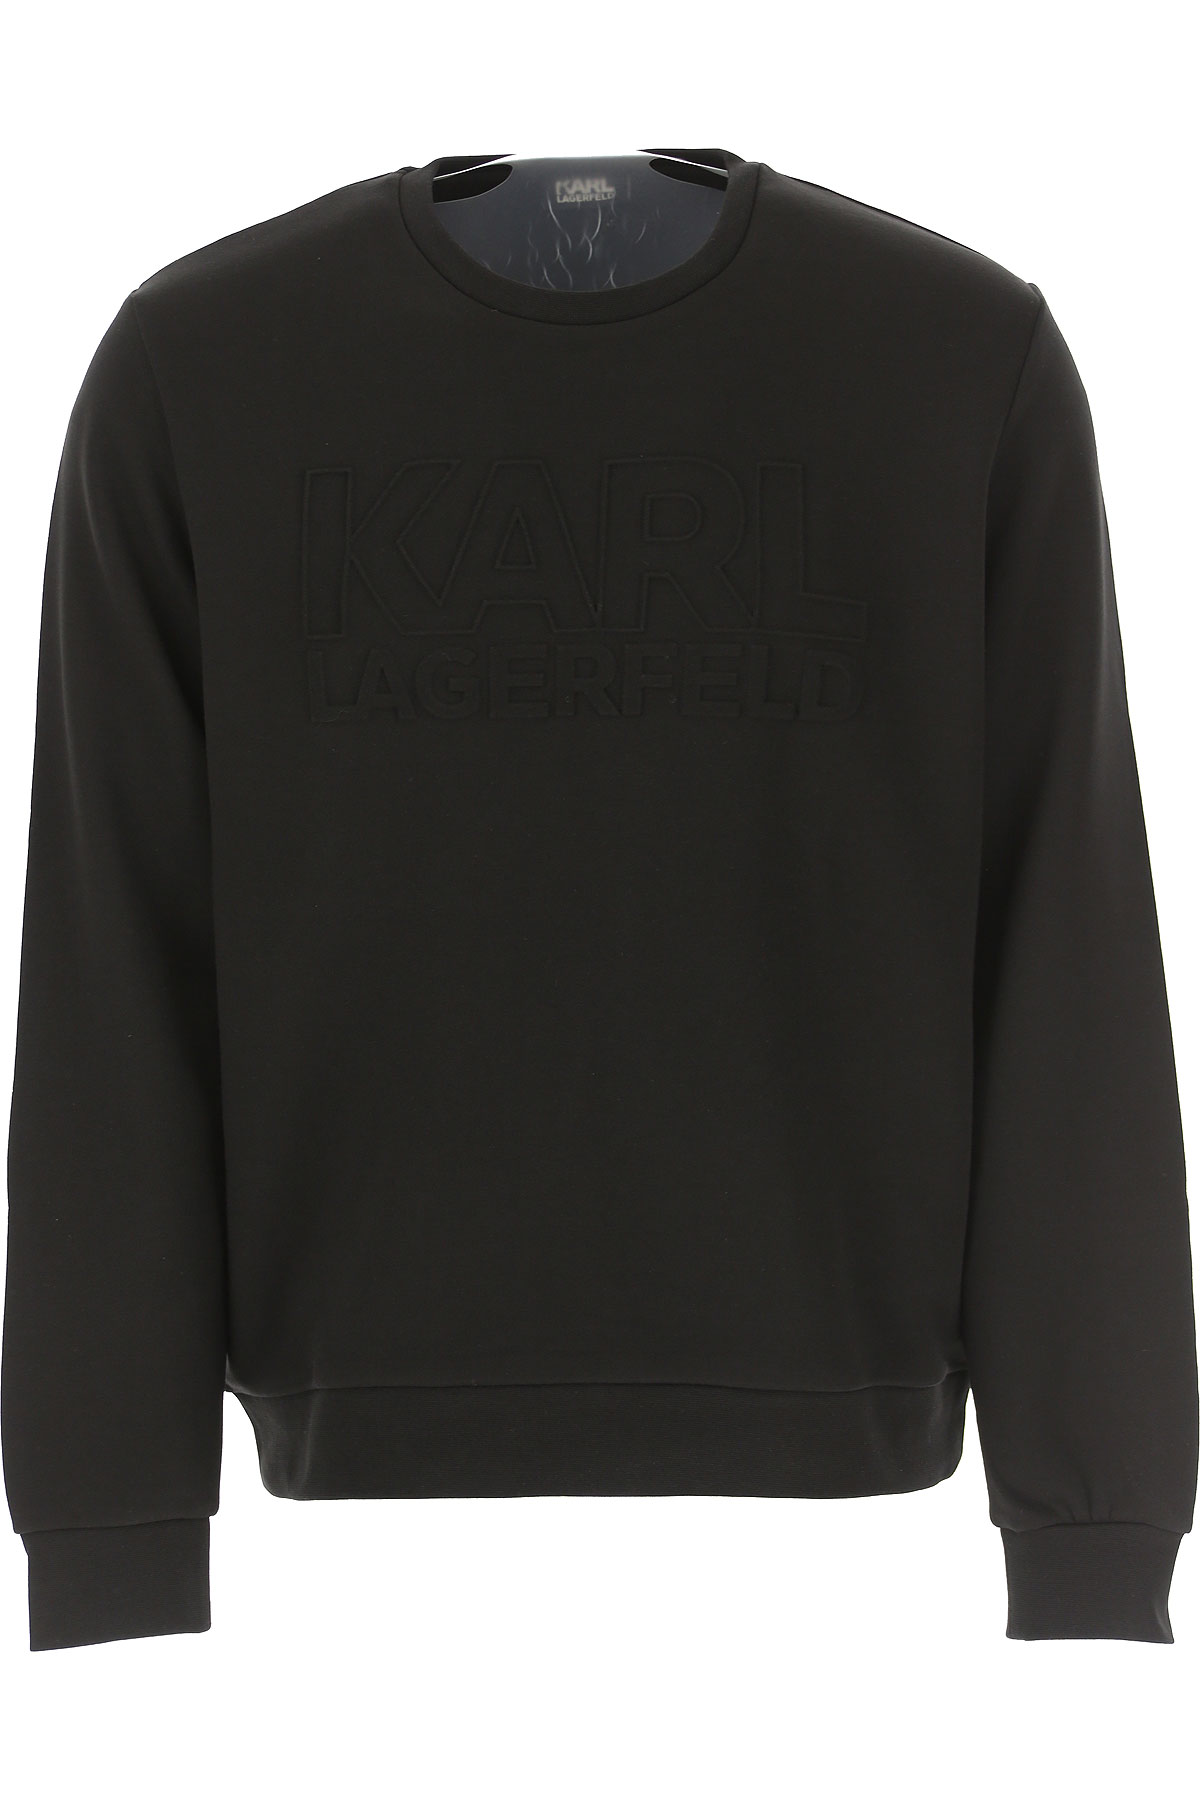 Karl Lagerfeld Sweatshirt für Herren, Kapuzenpulli, Hoodie, Sweats Günstig im Sale, Schwarz, Baumwolle, 2017, L M S XL